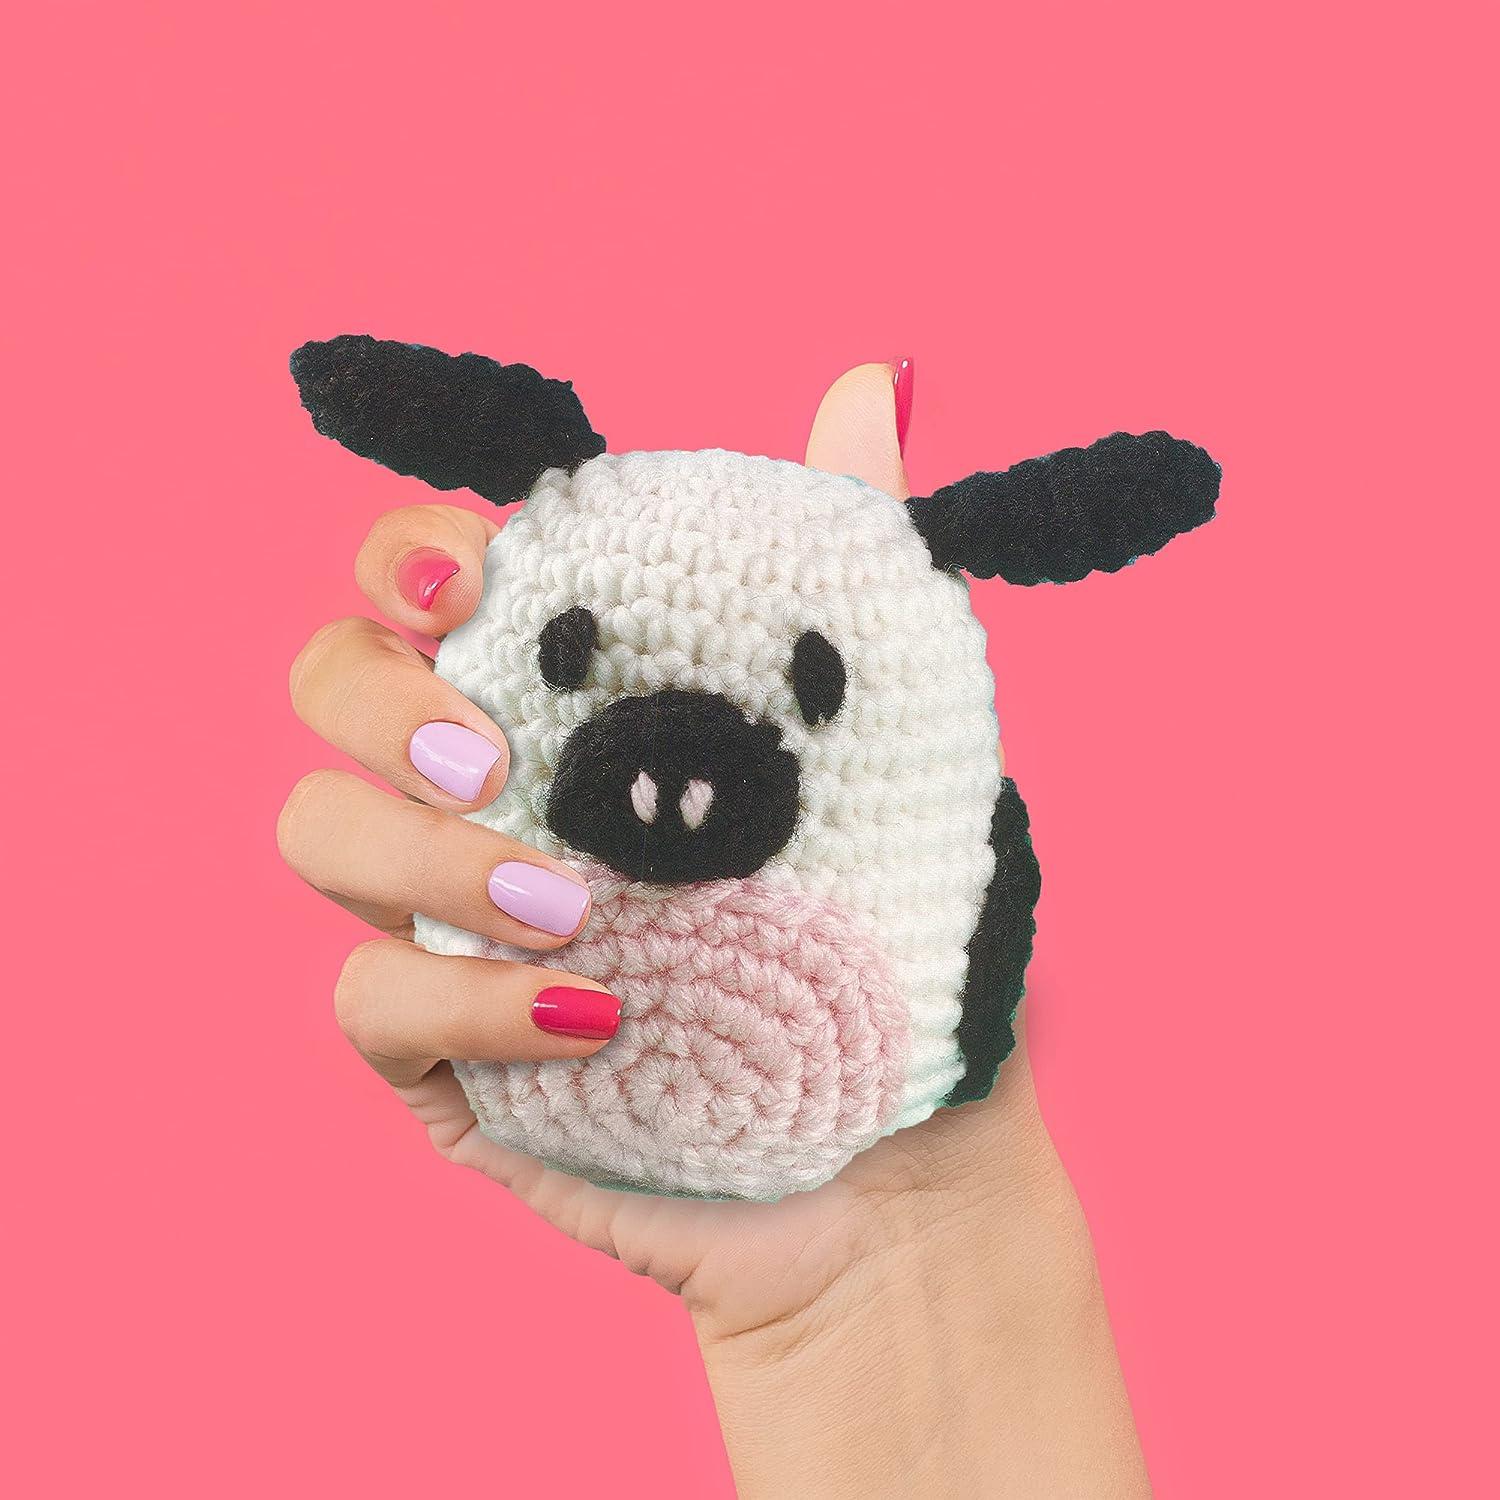 Beginner Cow Crochet Kit Easy Crochet Starter Kit Crochet Animals Kit  Amigurumi Kit Crochet Gift Animal Crochet Store 